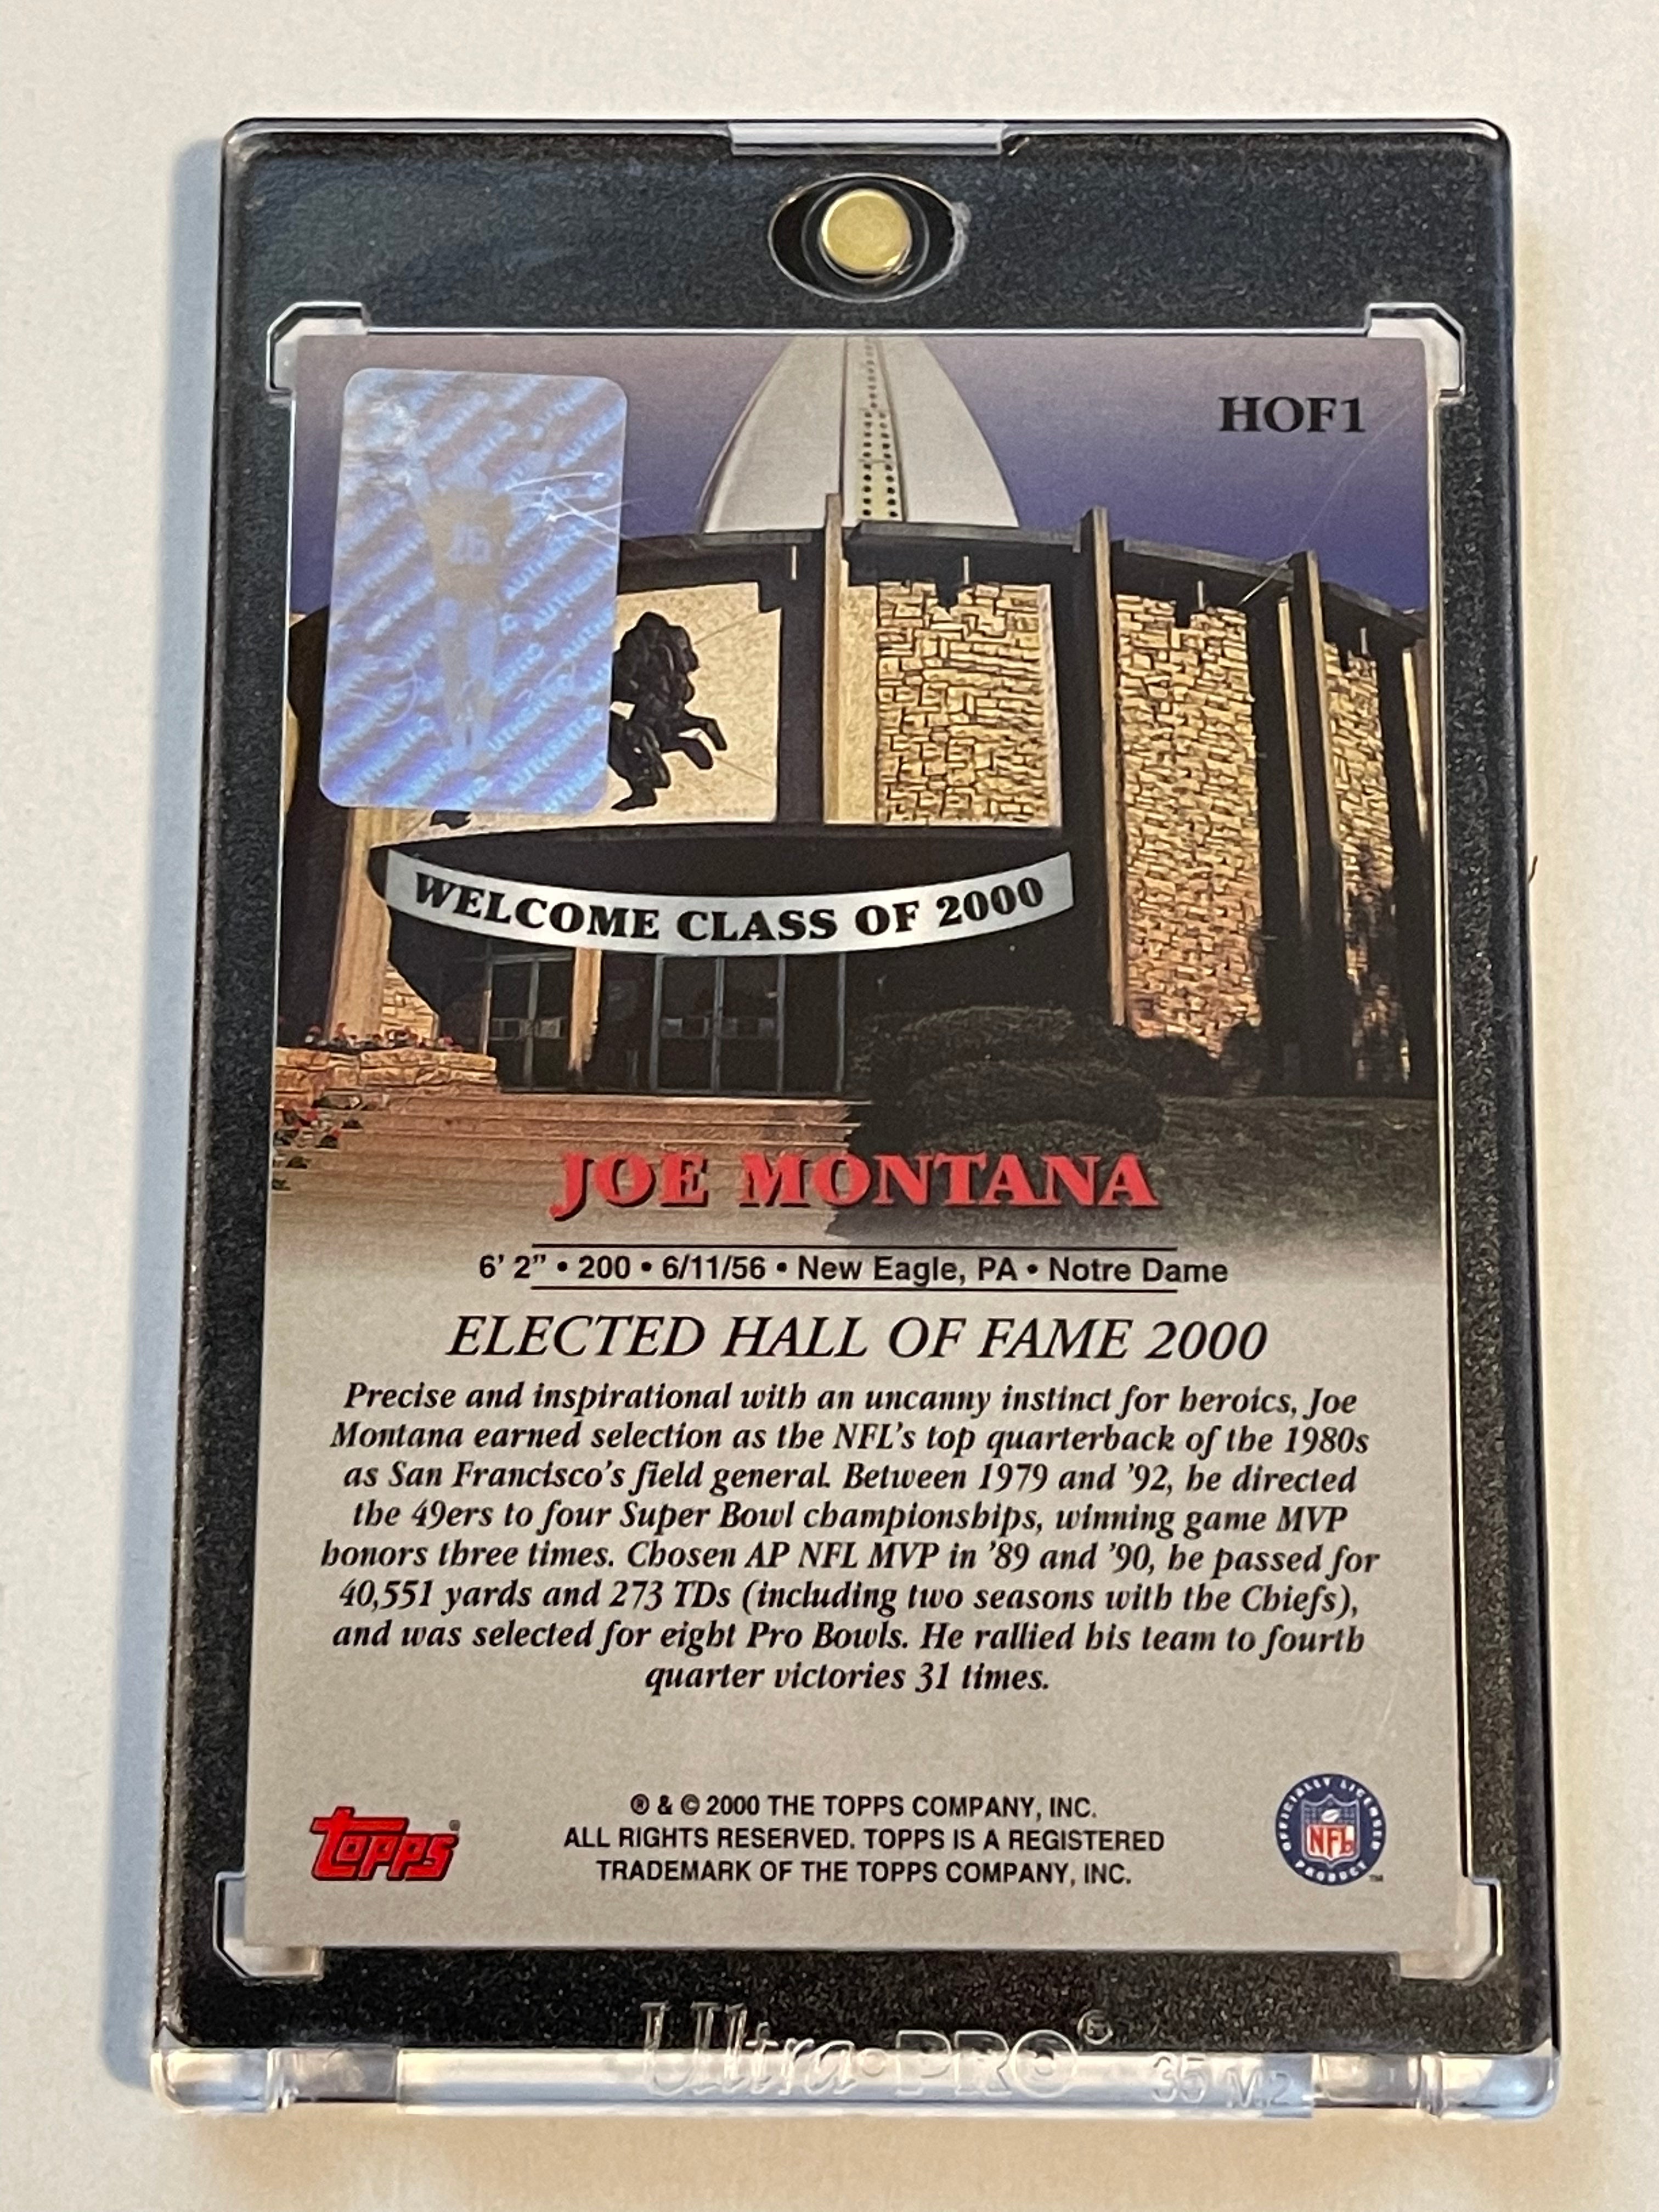 Joe Montana Football Hall of fame autograph card certified by Joe Montana company 2000